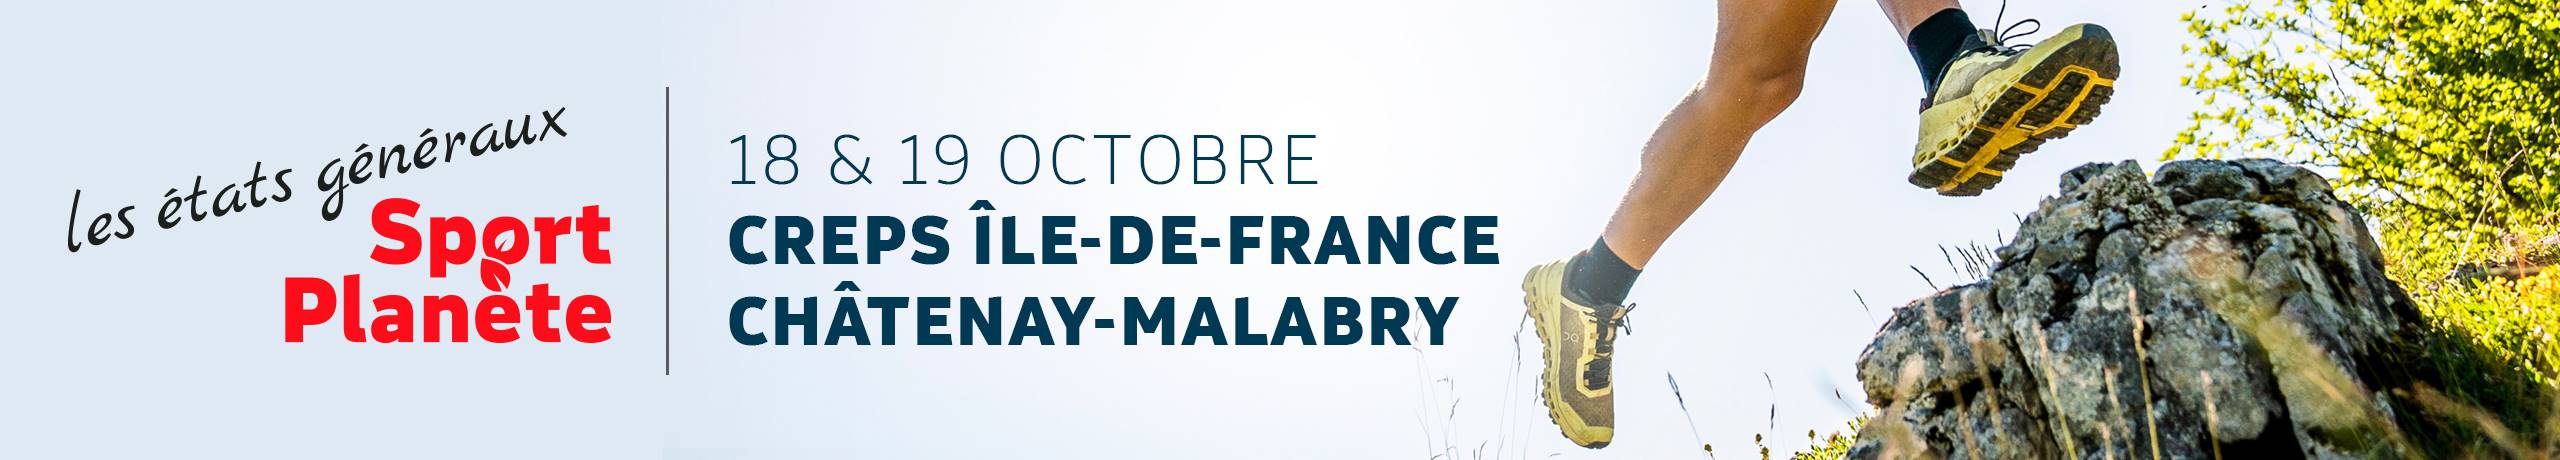 Etats généraux Sport Planète, les 18 et 19 octobre au Creps Ile-de-France, Châtenay Malabry